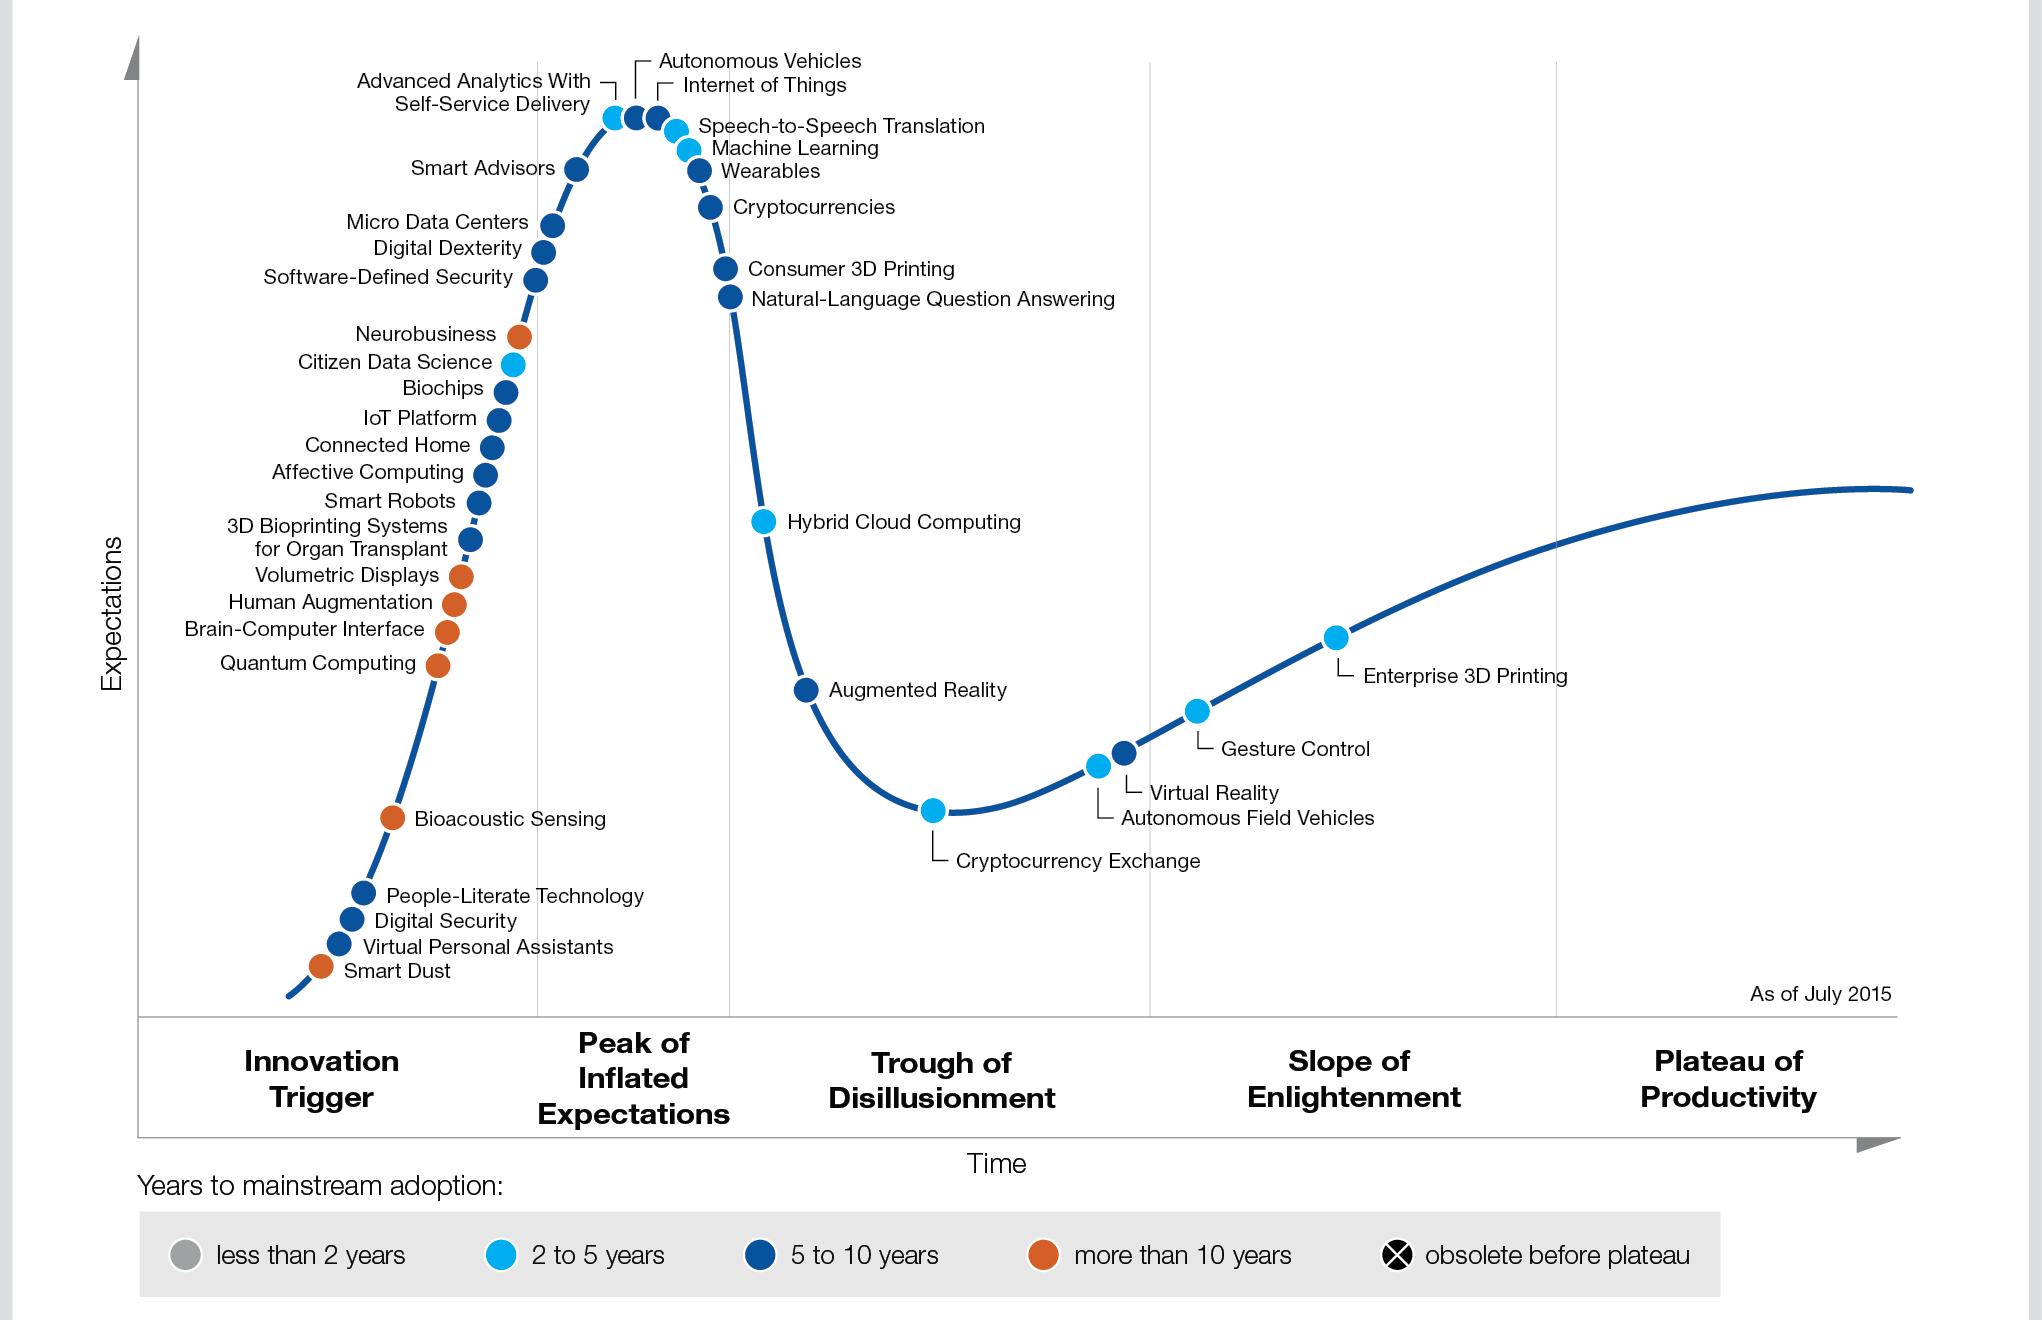 نمودار گارتنر در مورد فناوری های نوظهور - اینترنت اشیا